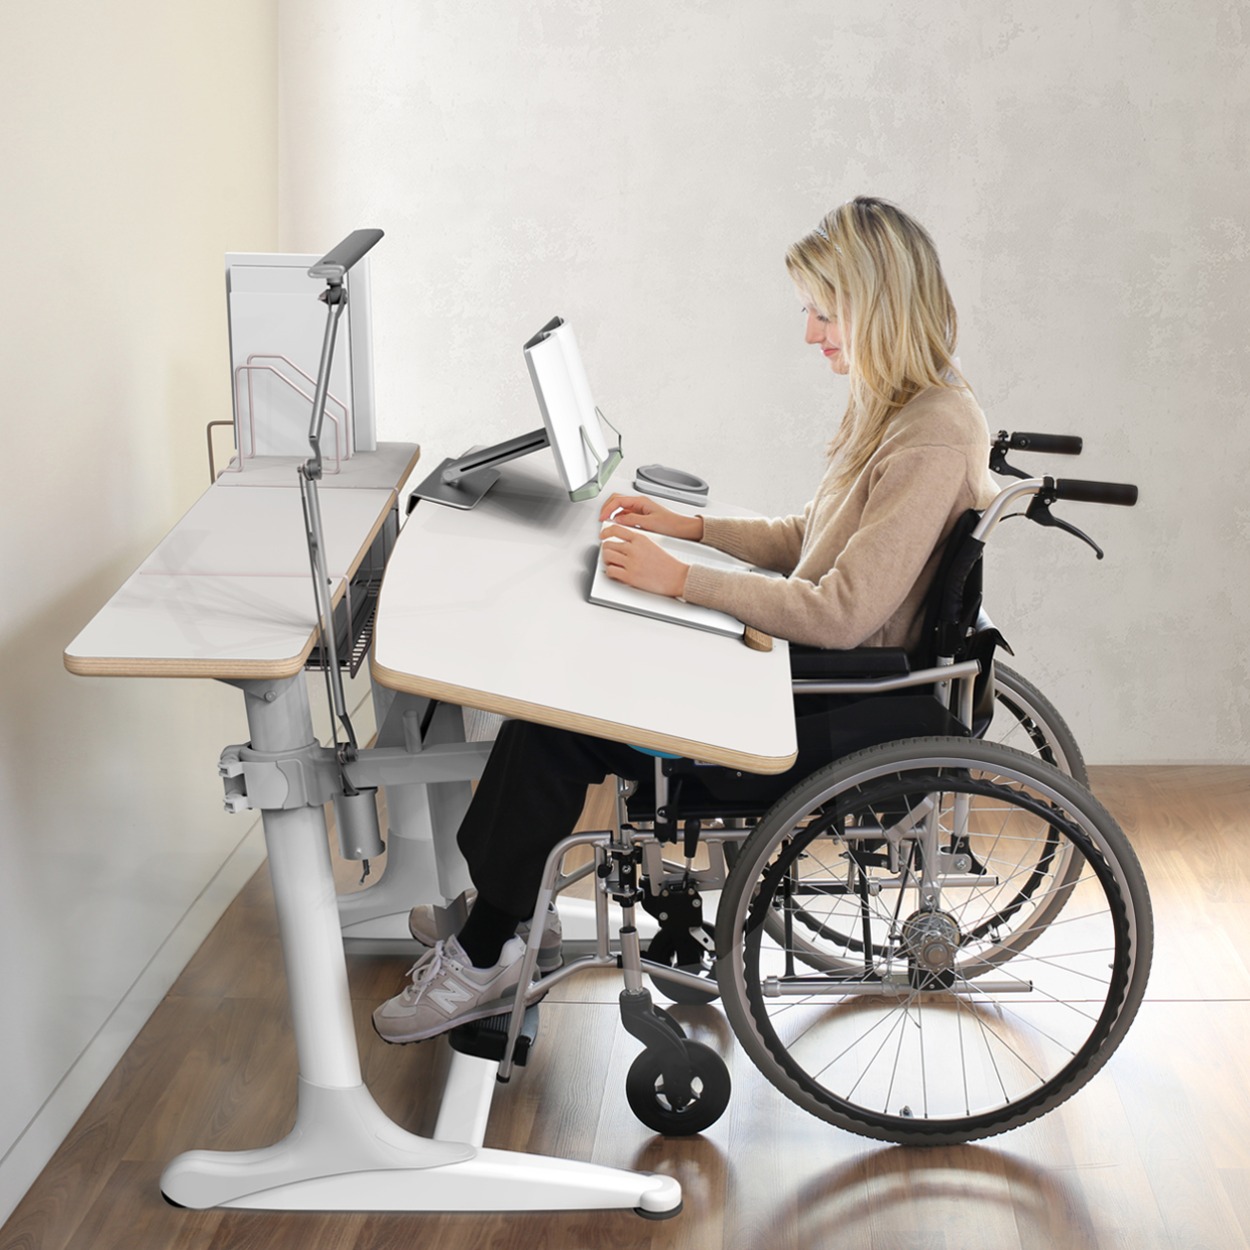 니스툴그로우 높이각도조절 플라이우드 책상 휠체어 사용 어린이용 30% 할인상품